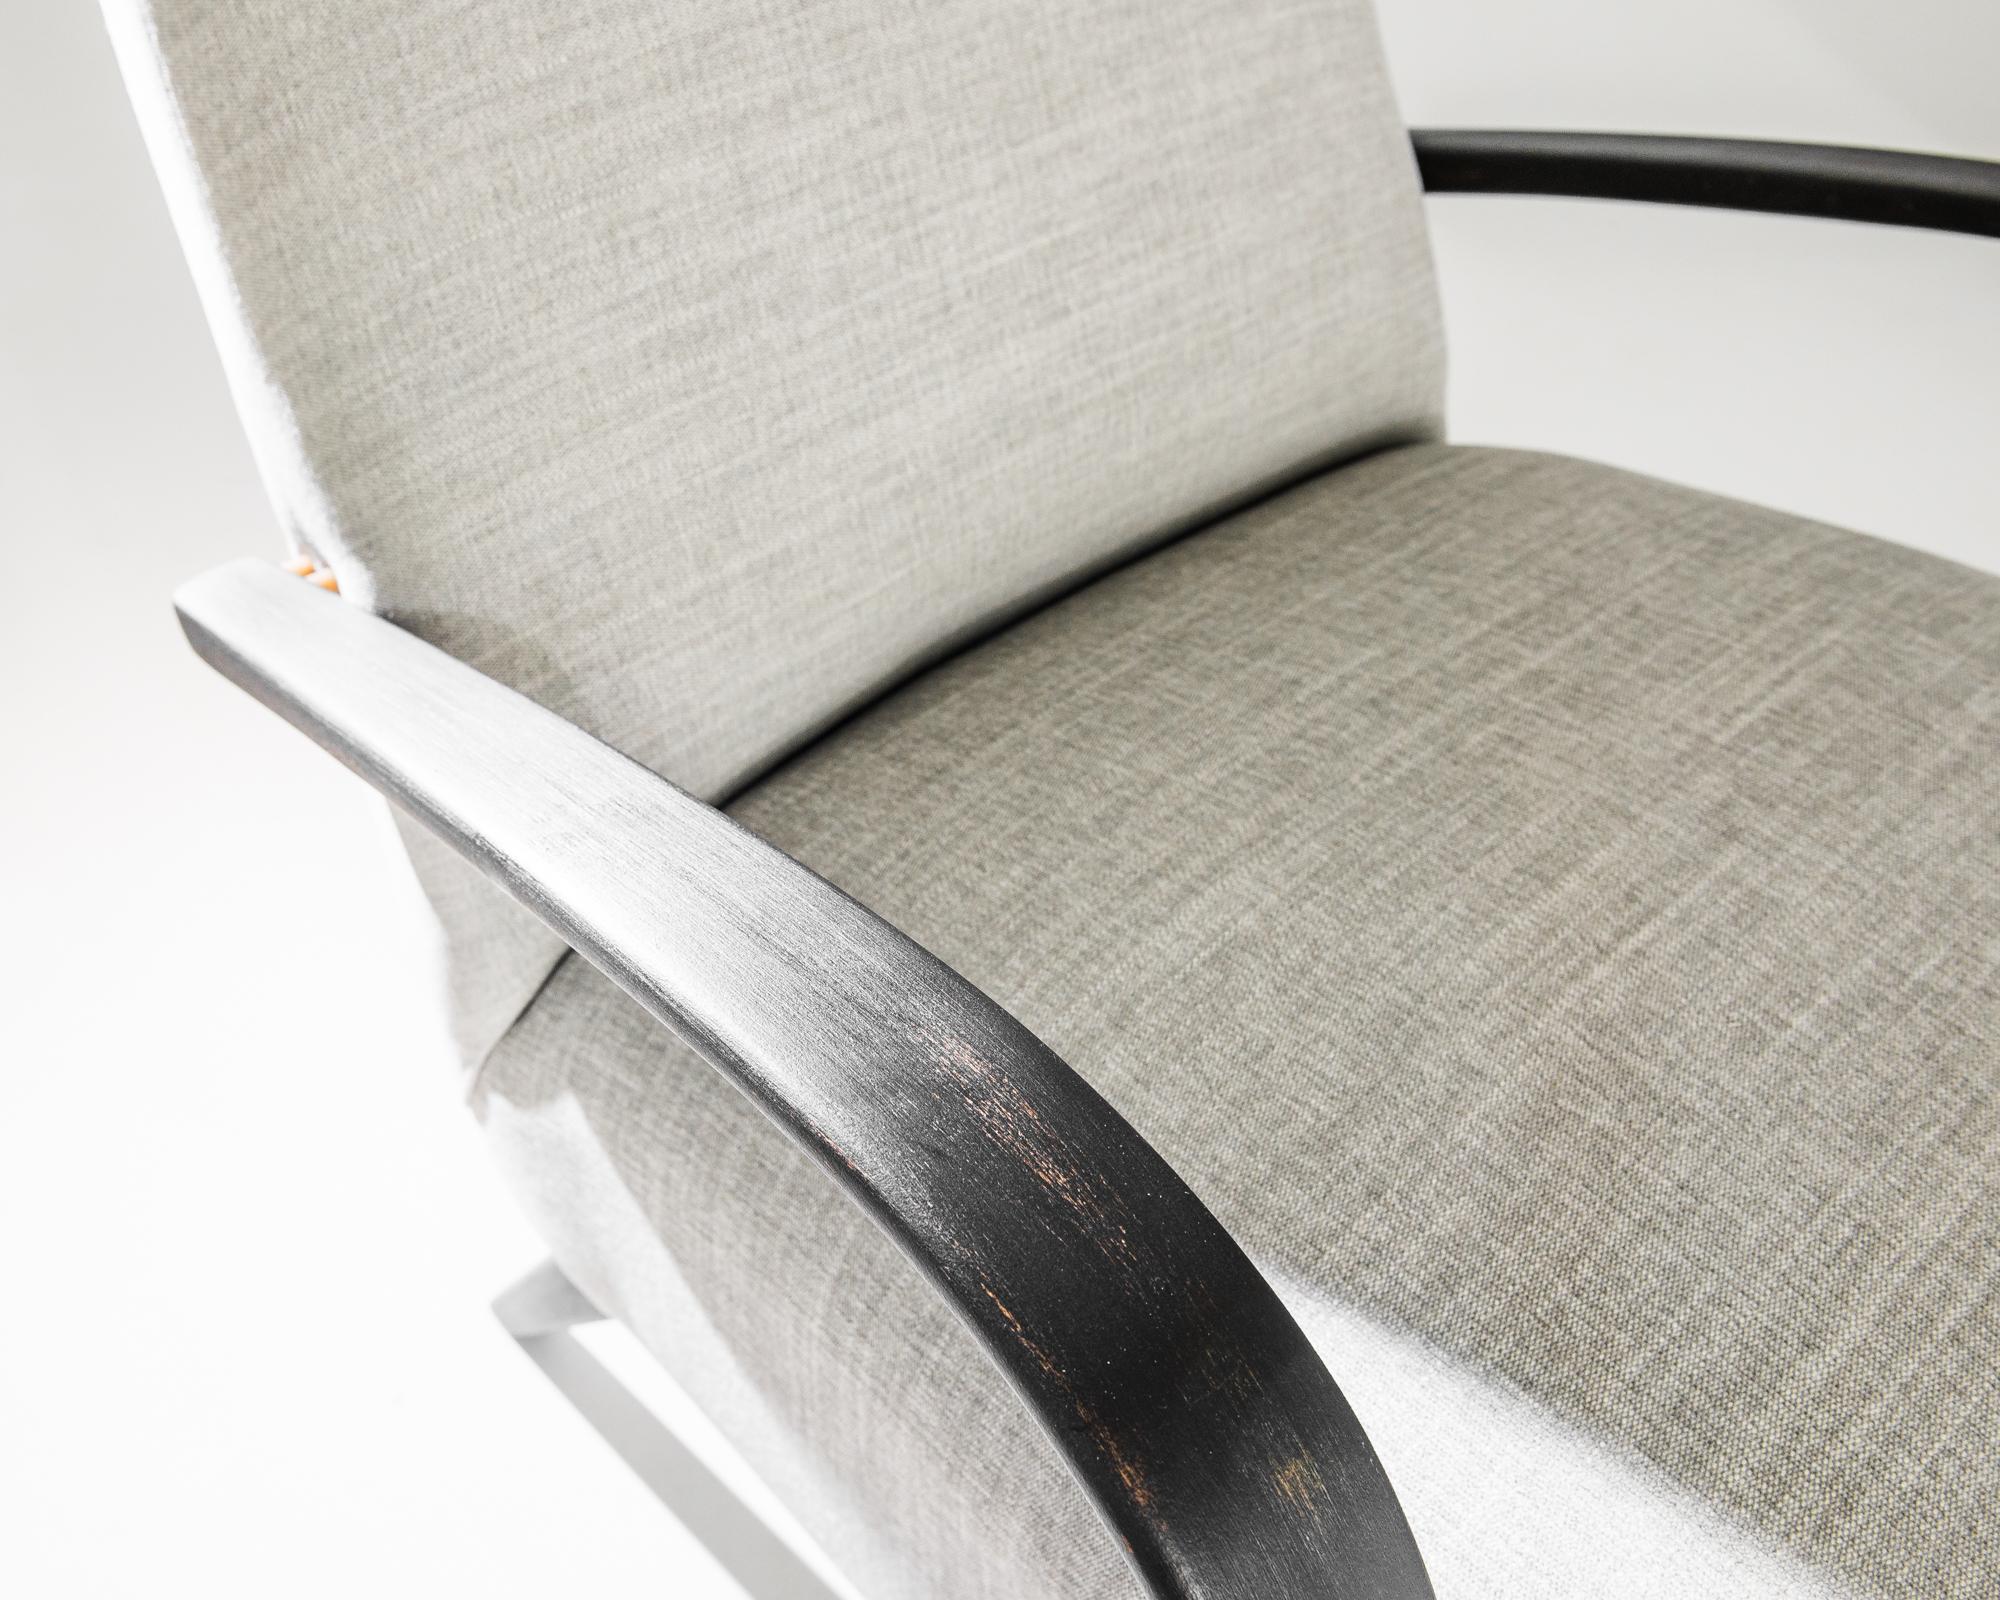 Une paire de fauteuils du designer de meubles tchèque Jindrich Halabala. Ce modèle des années 1950 est tapissé d'un tissu beige actualisé. Ce ton terreux et apaisant a été choisi pour compléter le noir texturé du cadre en bois dur. Influencées par